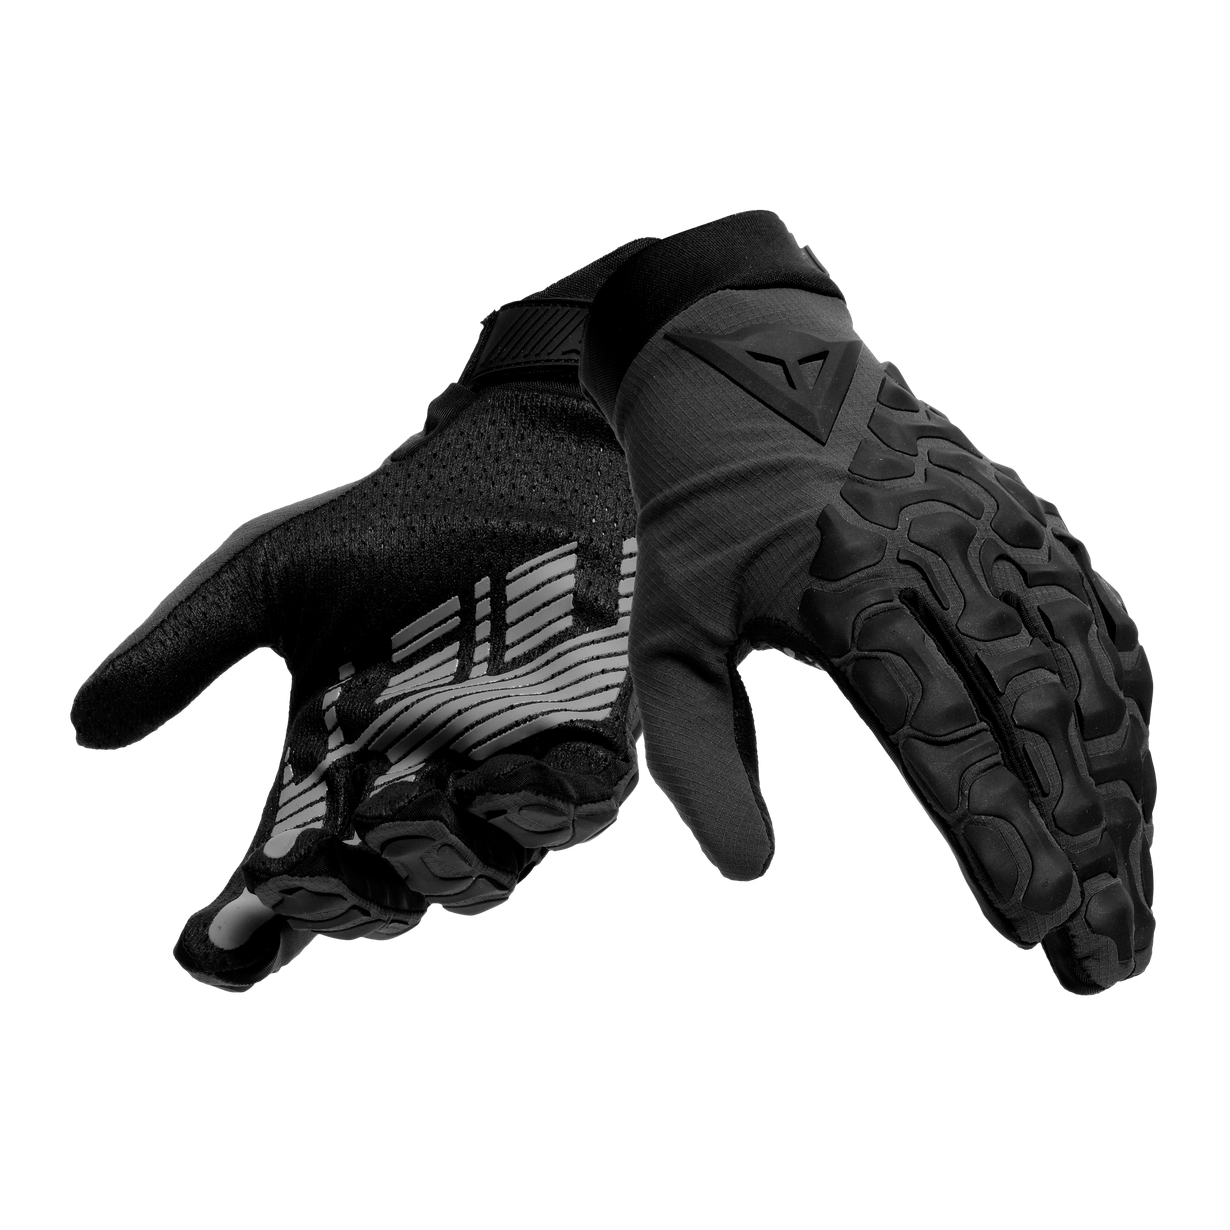 Produktbild von Dainese HGR Handschuhe Ext - schwarz/schwarz